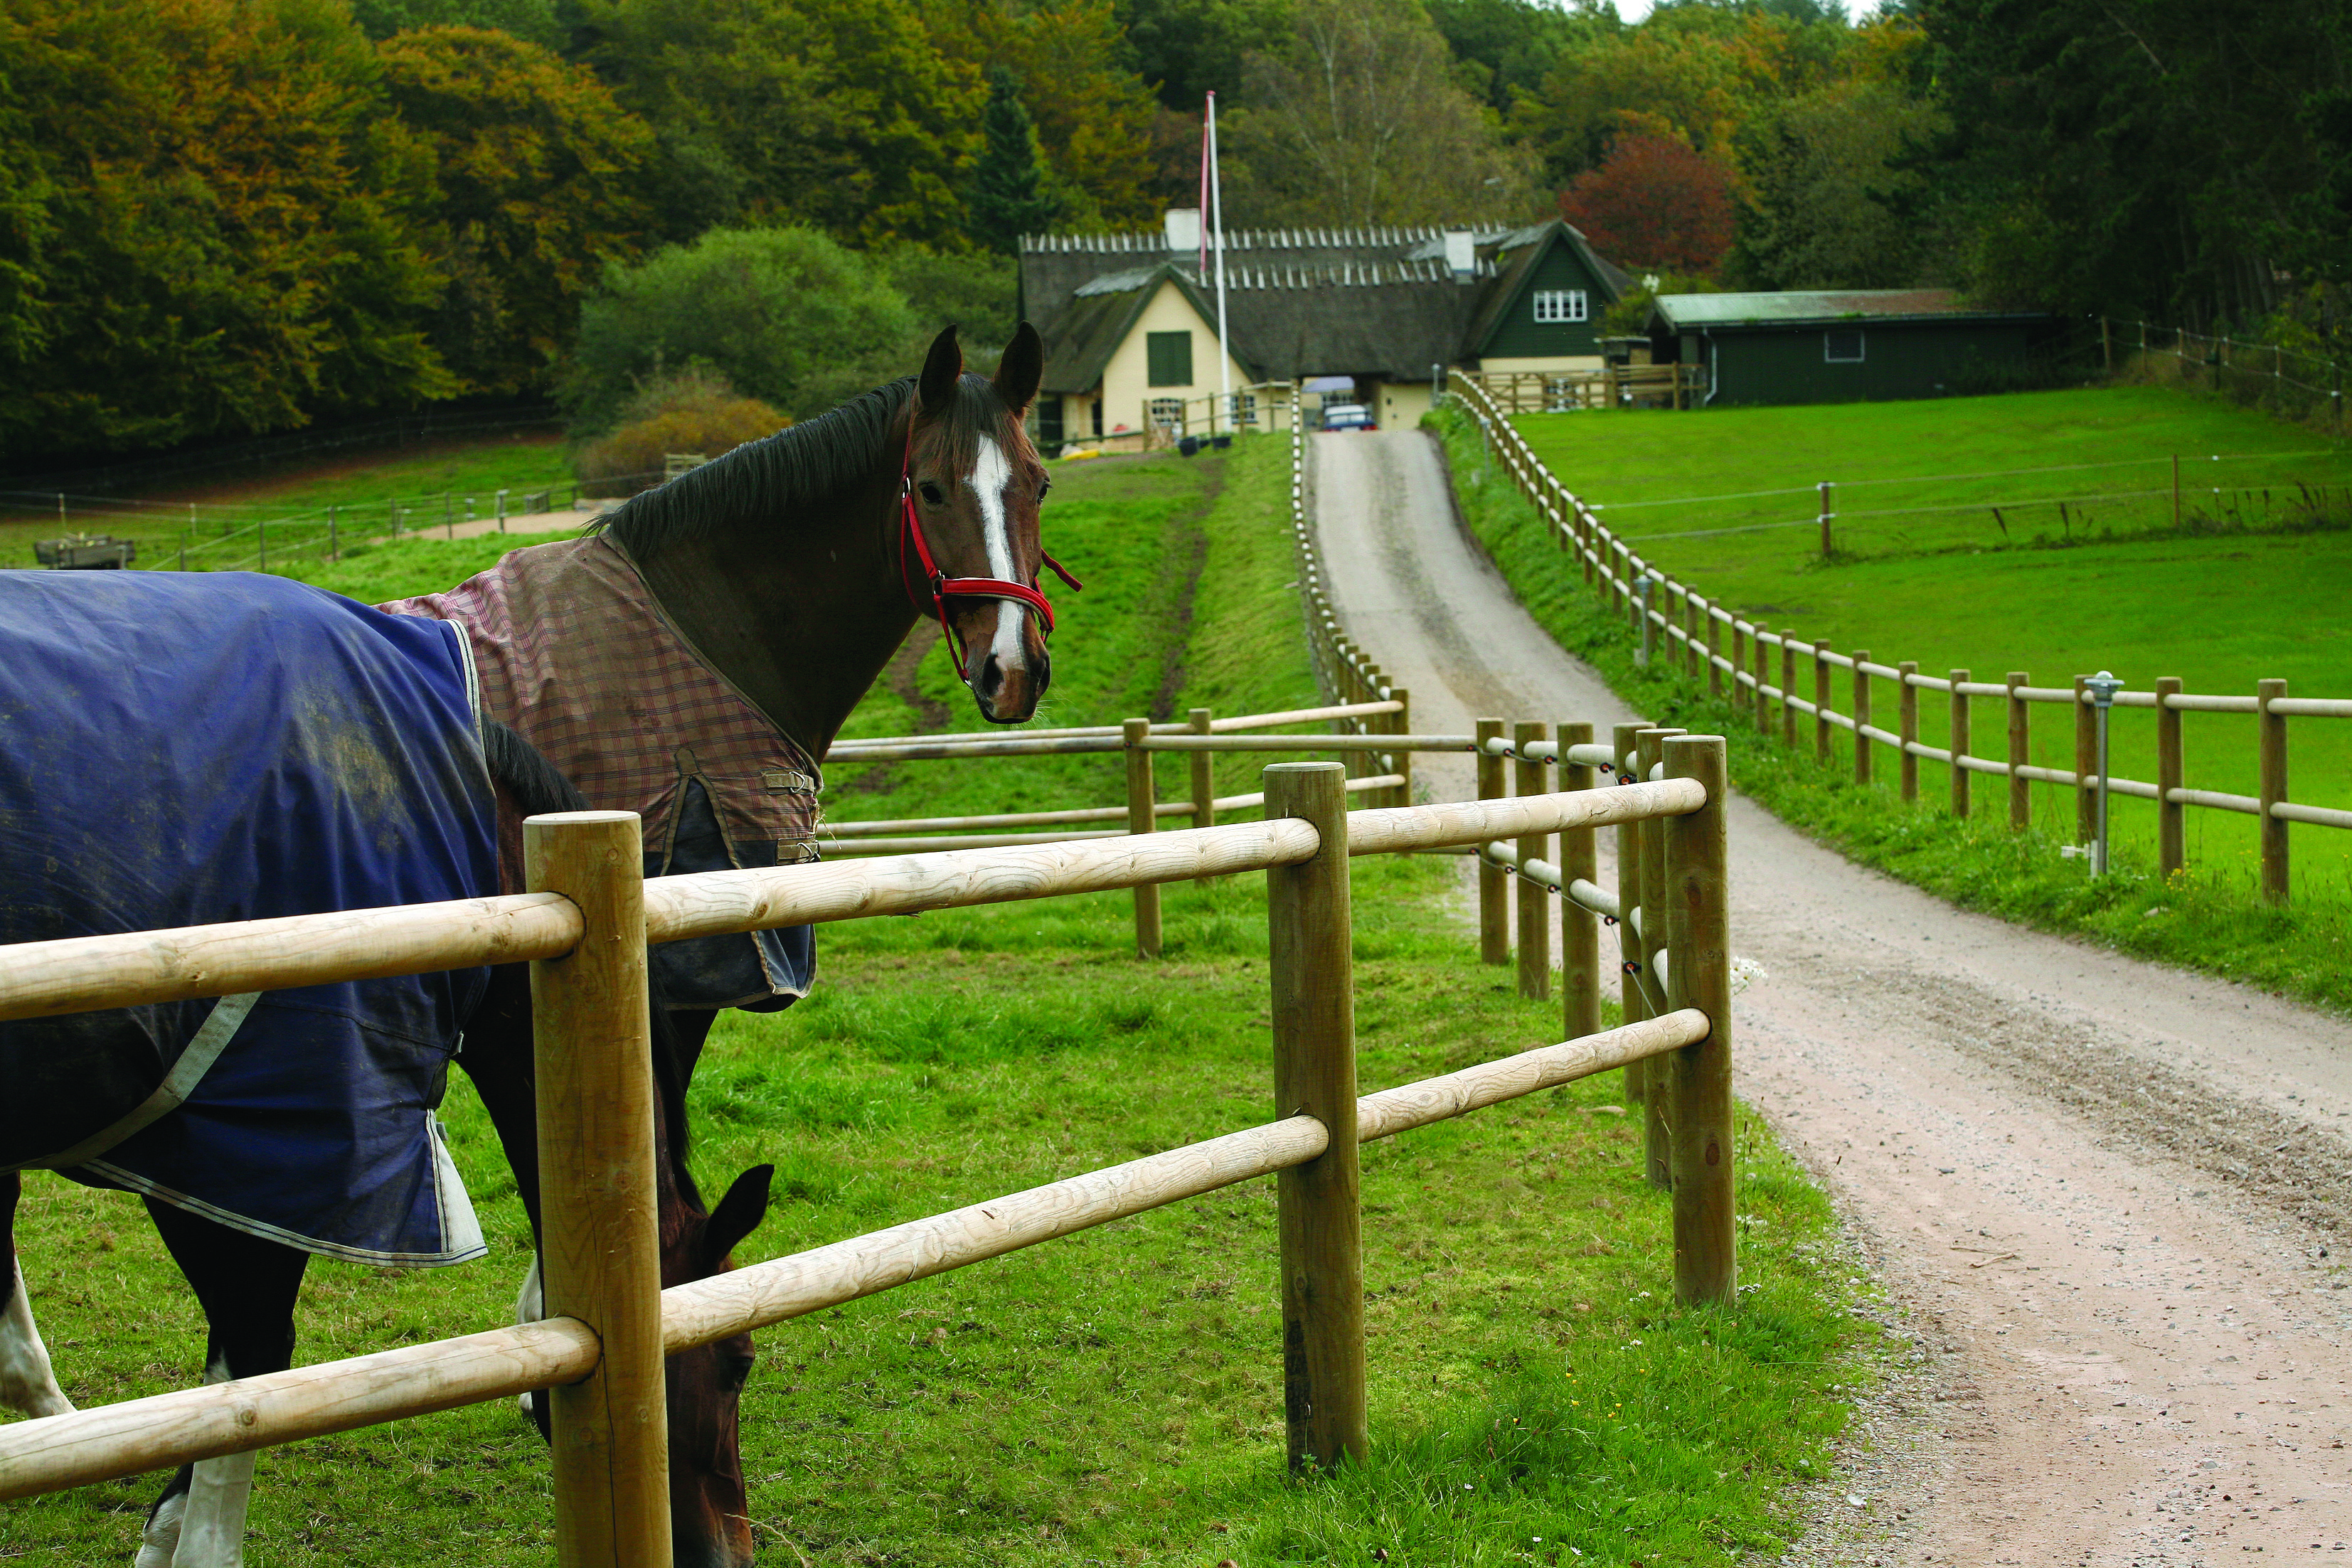 Een paard staat met opgeheven hoofd zijn omgeving te observeren, terwijl een ander paard graast. Beide paarden staan achter een paardenhek langs de oprijlaan van een landgoed.